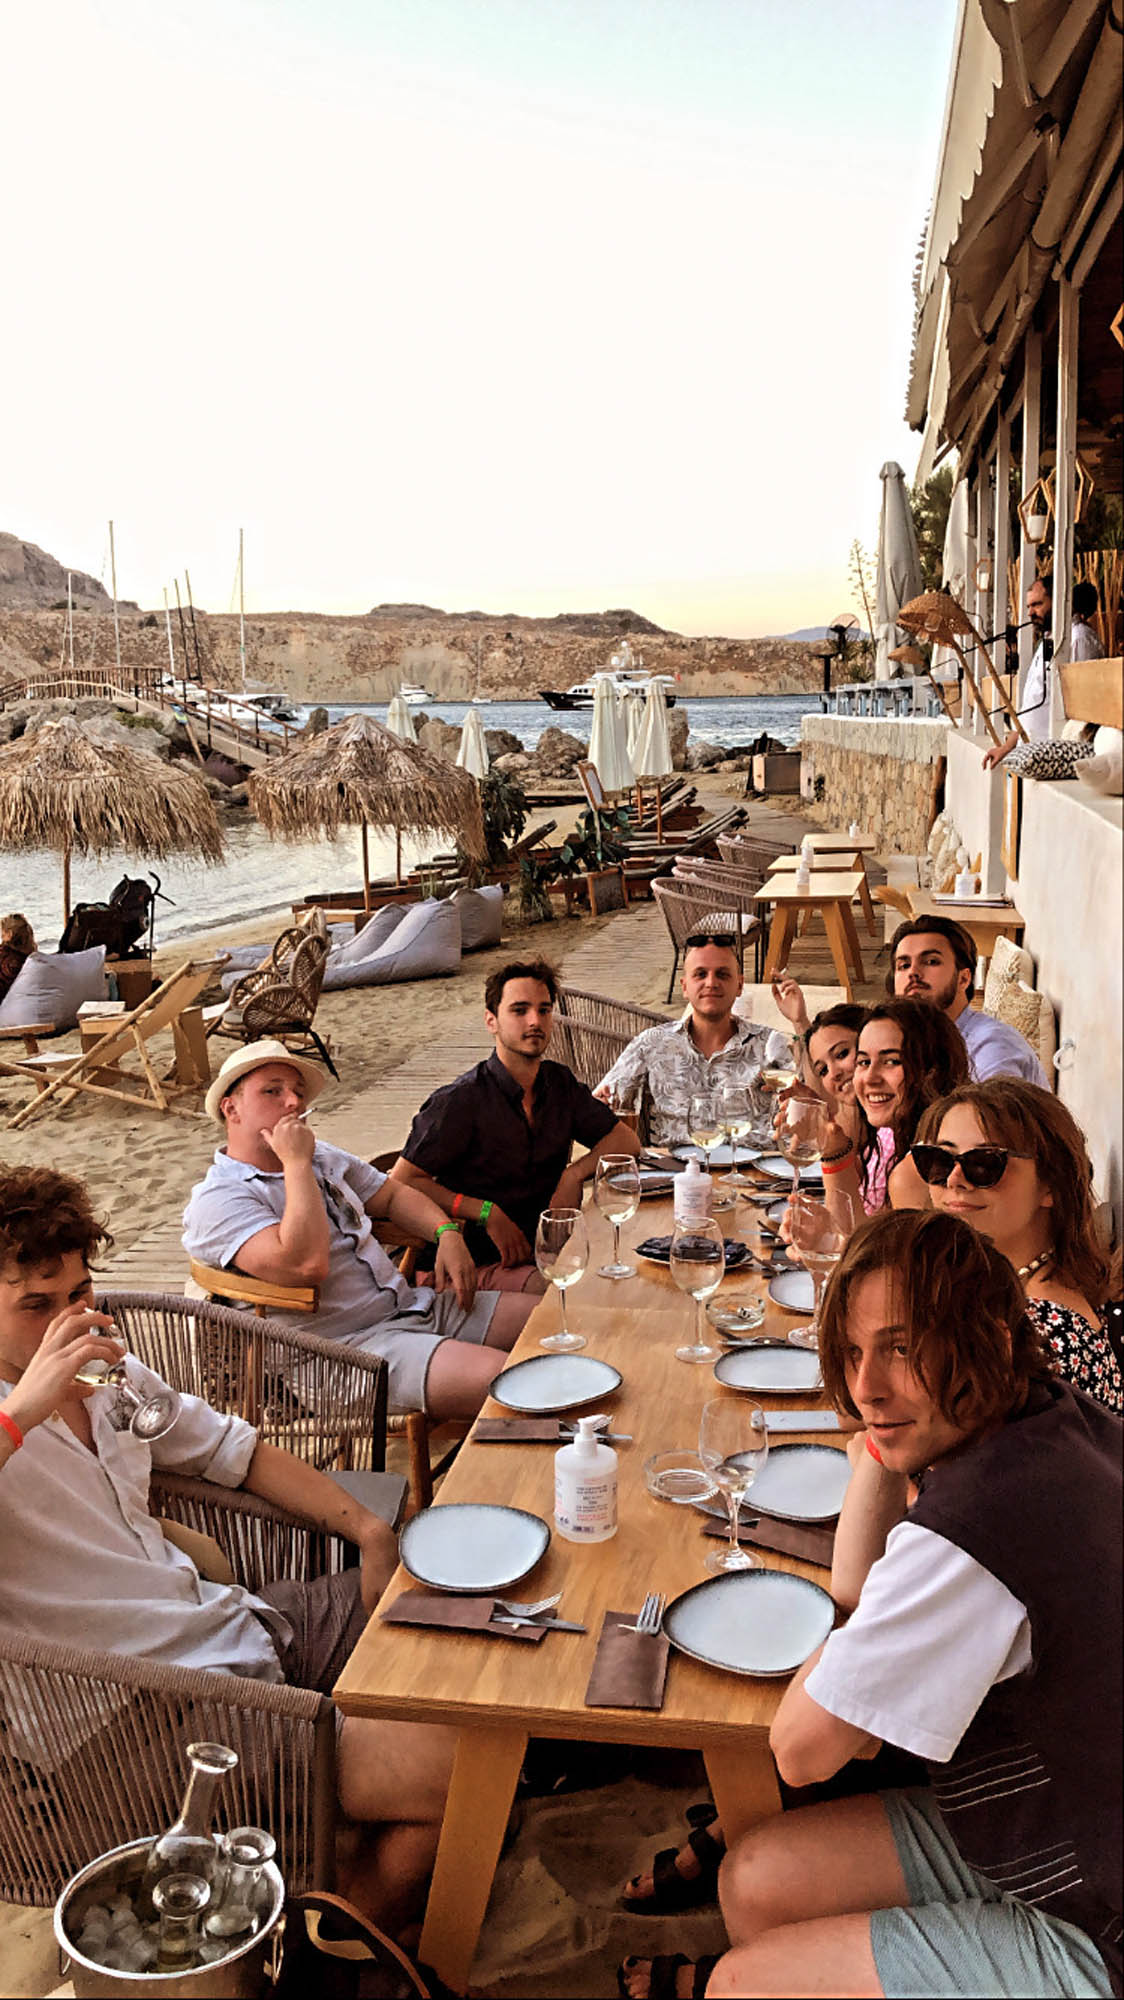 grecka tawerna na plaży, ludzie jedzą owoce morza